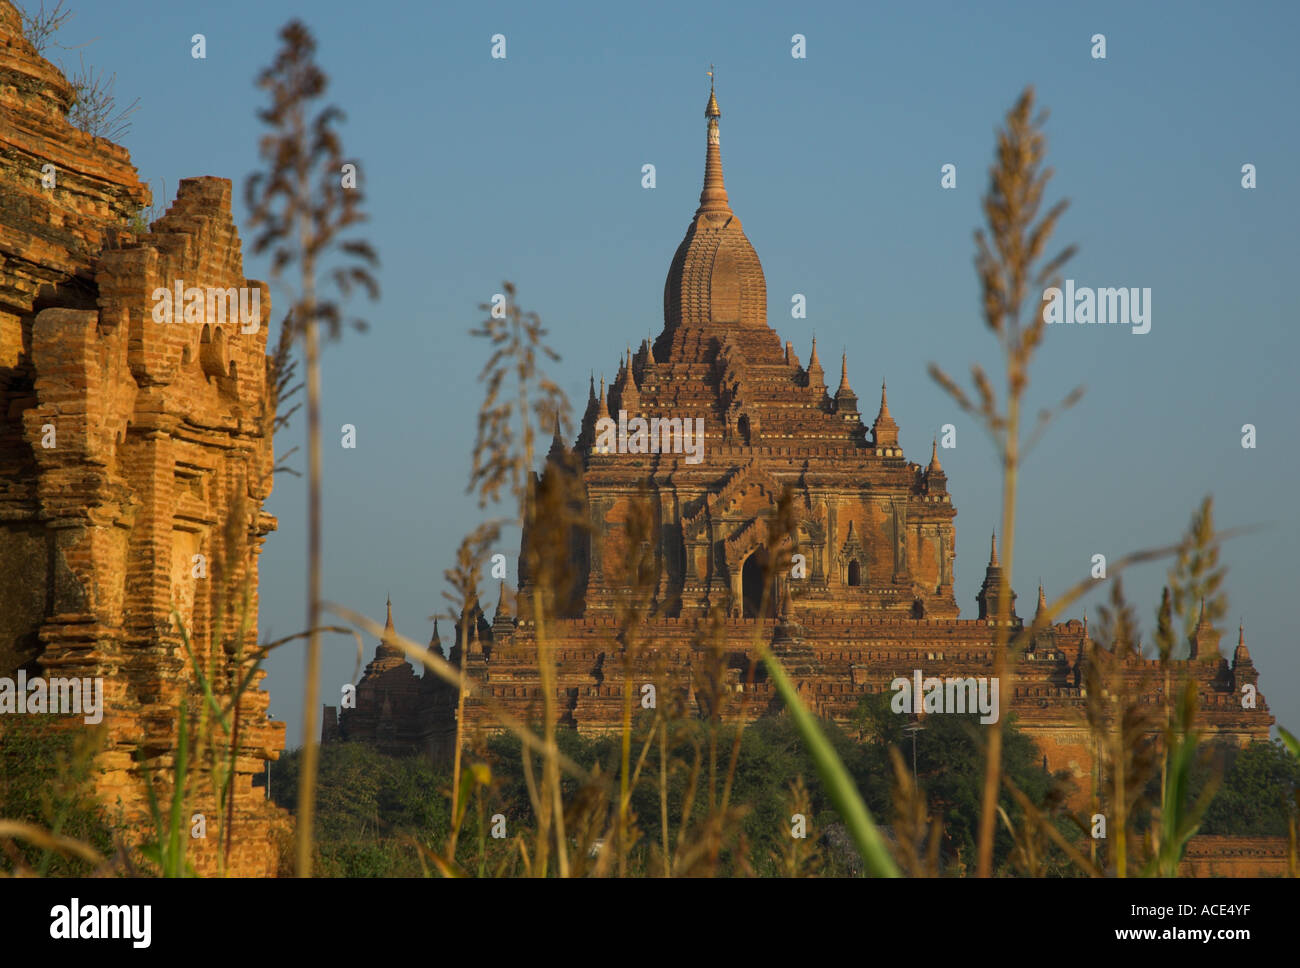 Myanmar-Burma-Bagan archäologische zone mehr als 4000 Tempel in einer Biegung des Flusses Ayeyarwady Htilominlo Pahto Tempel gesehen thr Stockfoto